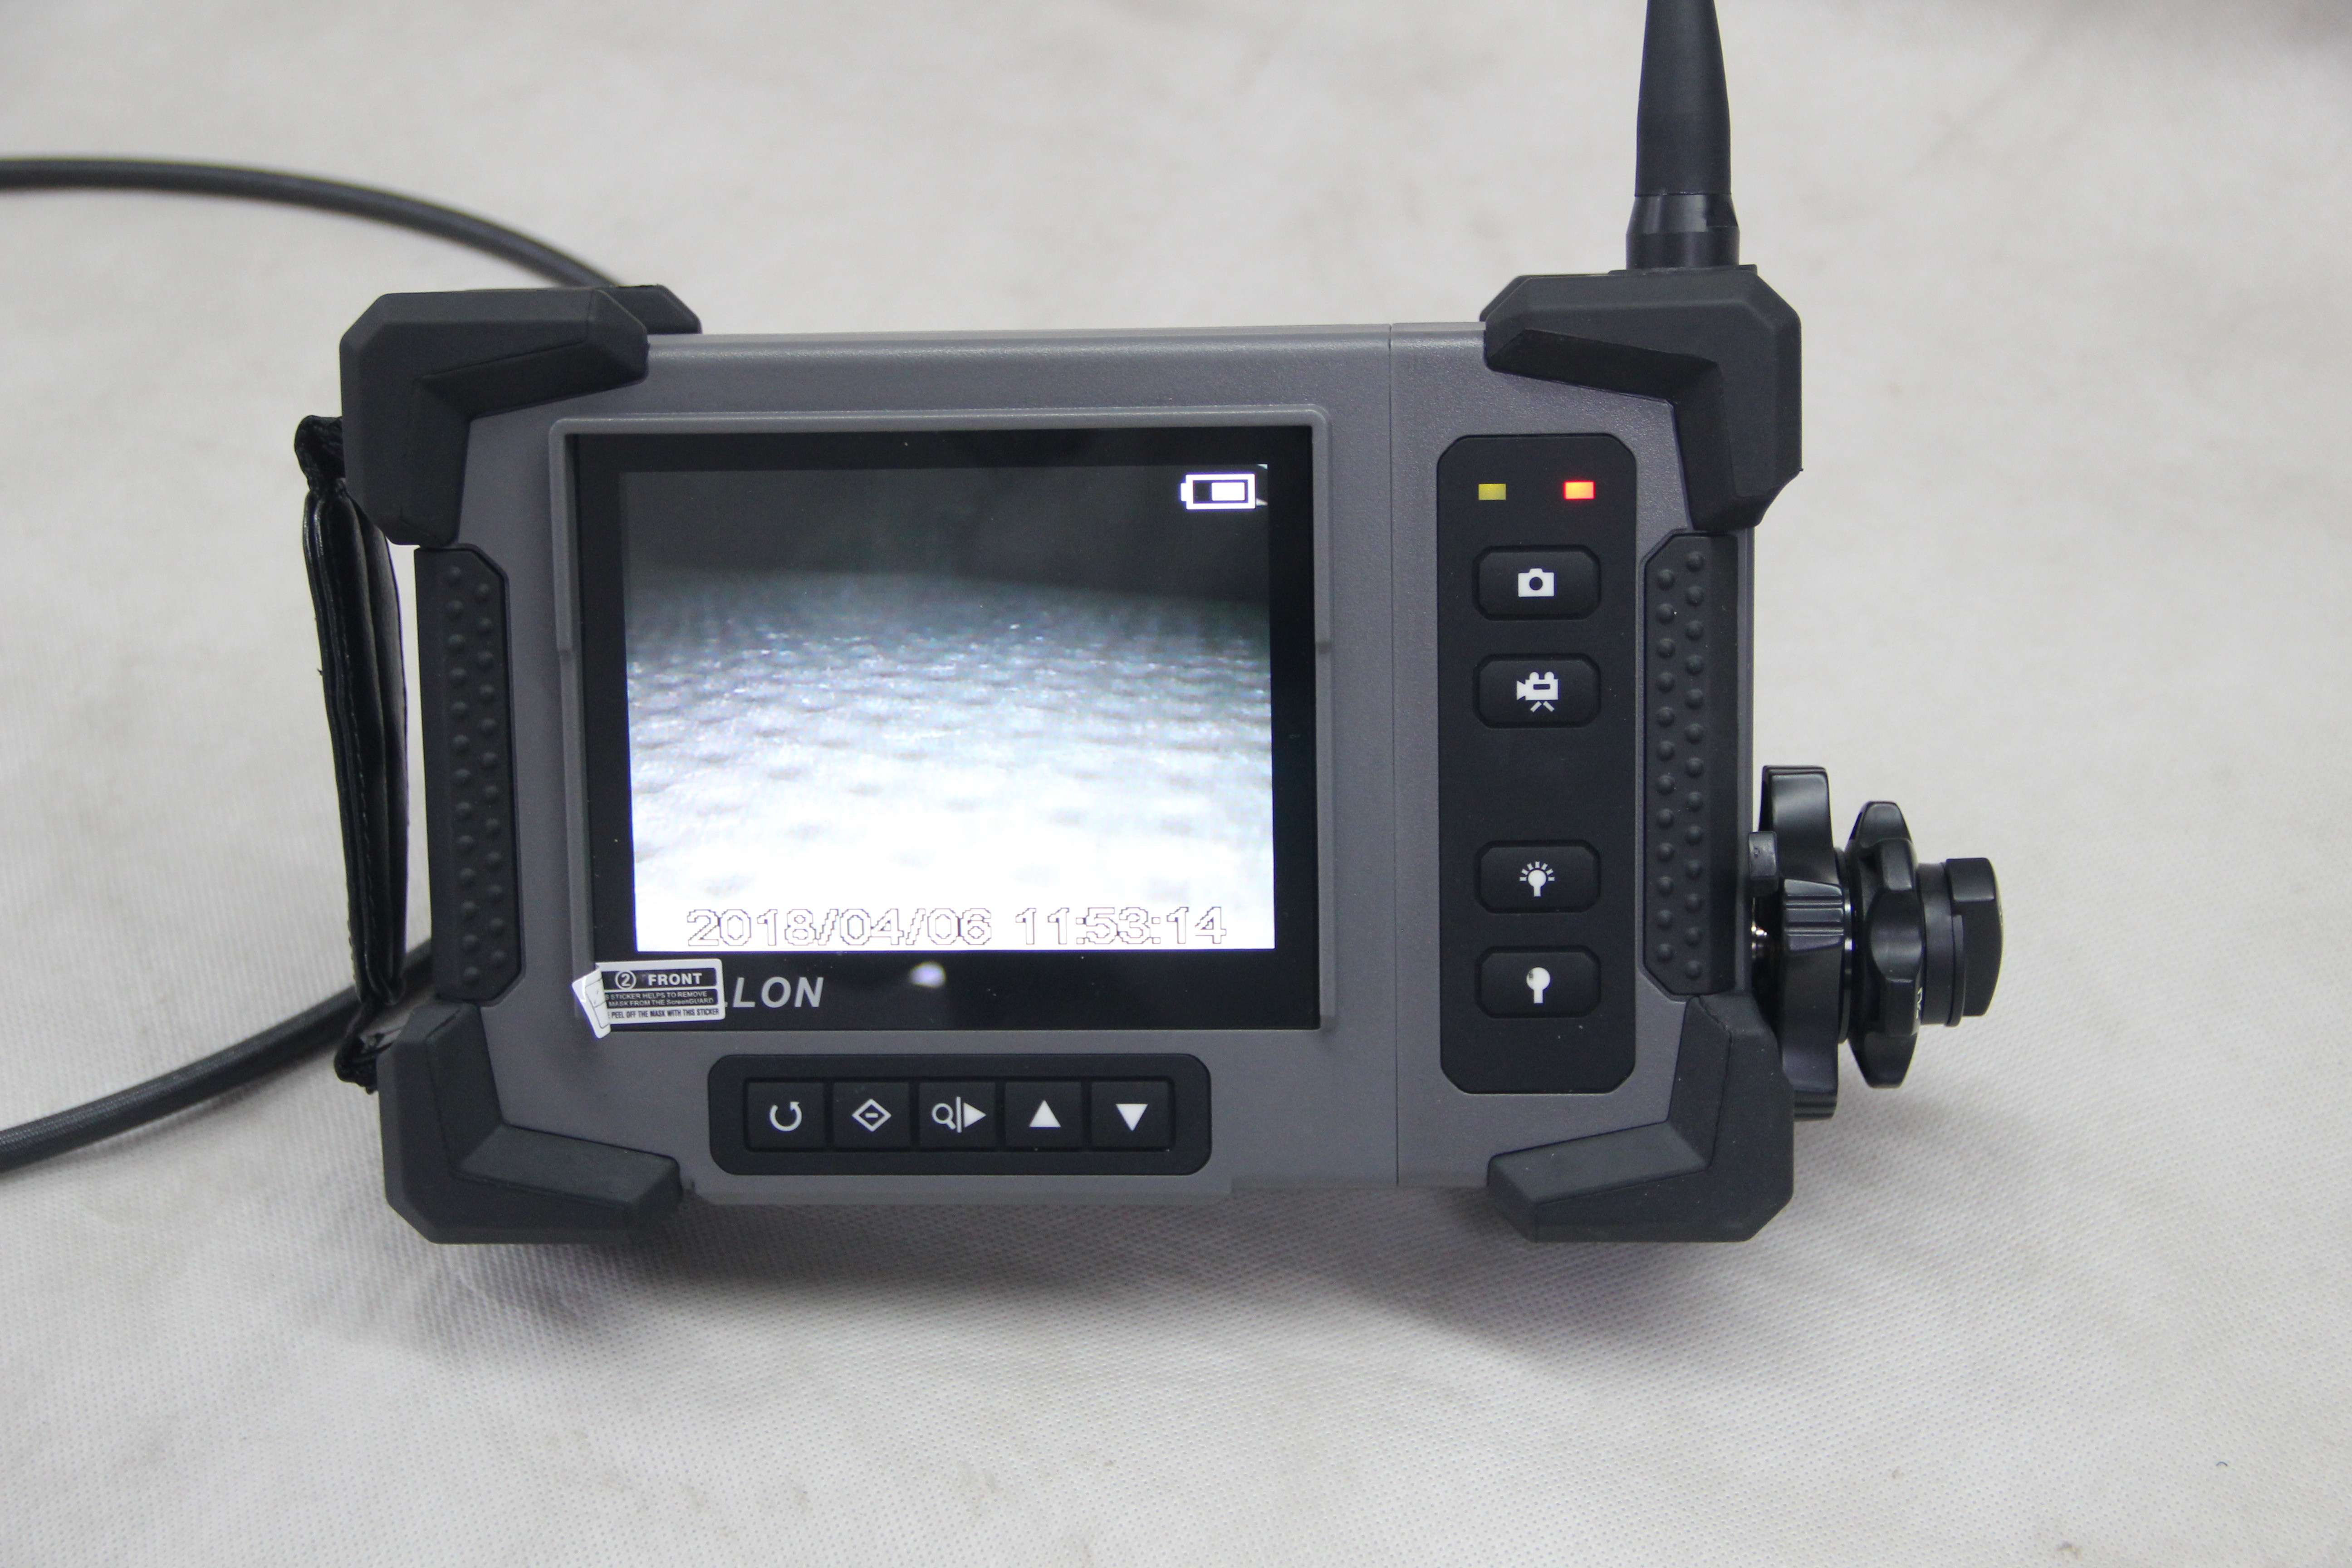 Industry boreoscope camera